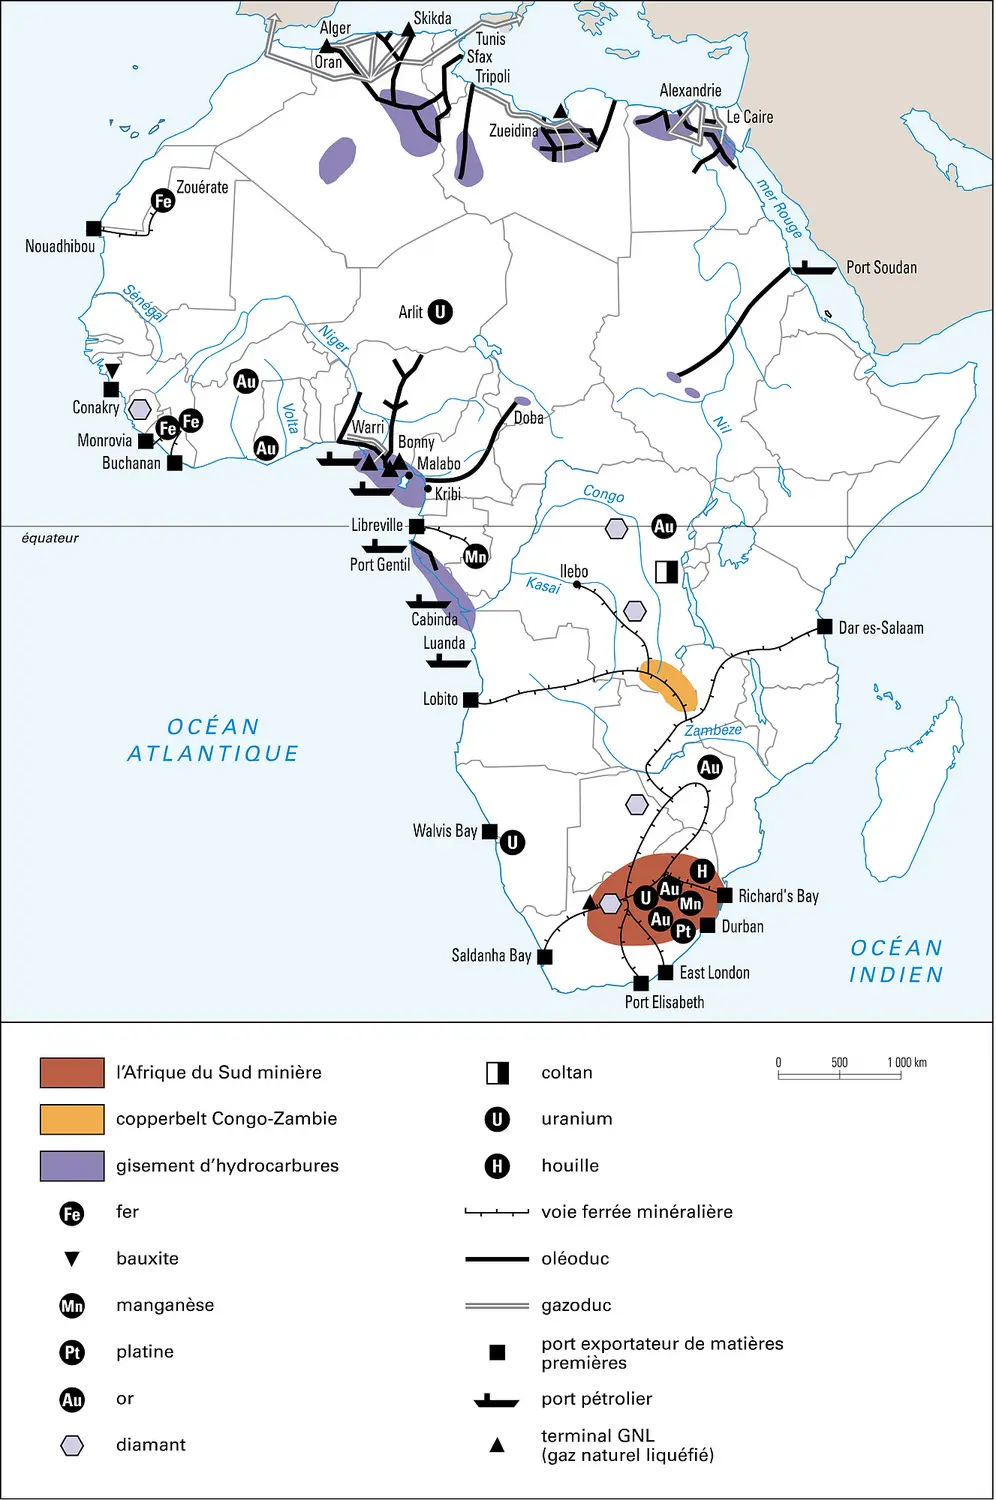 Afrique : ressources pétrolières et minières